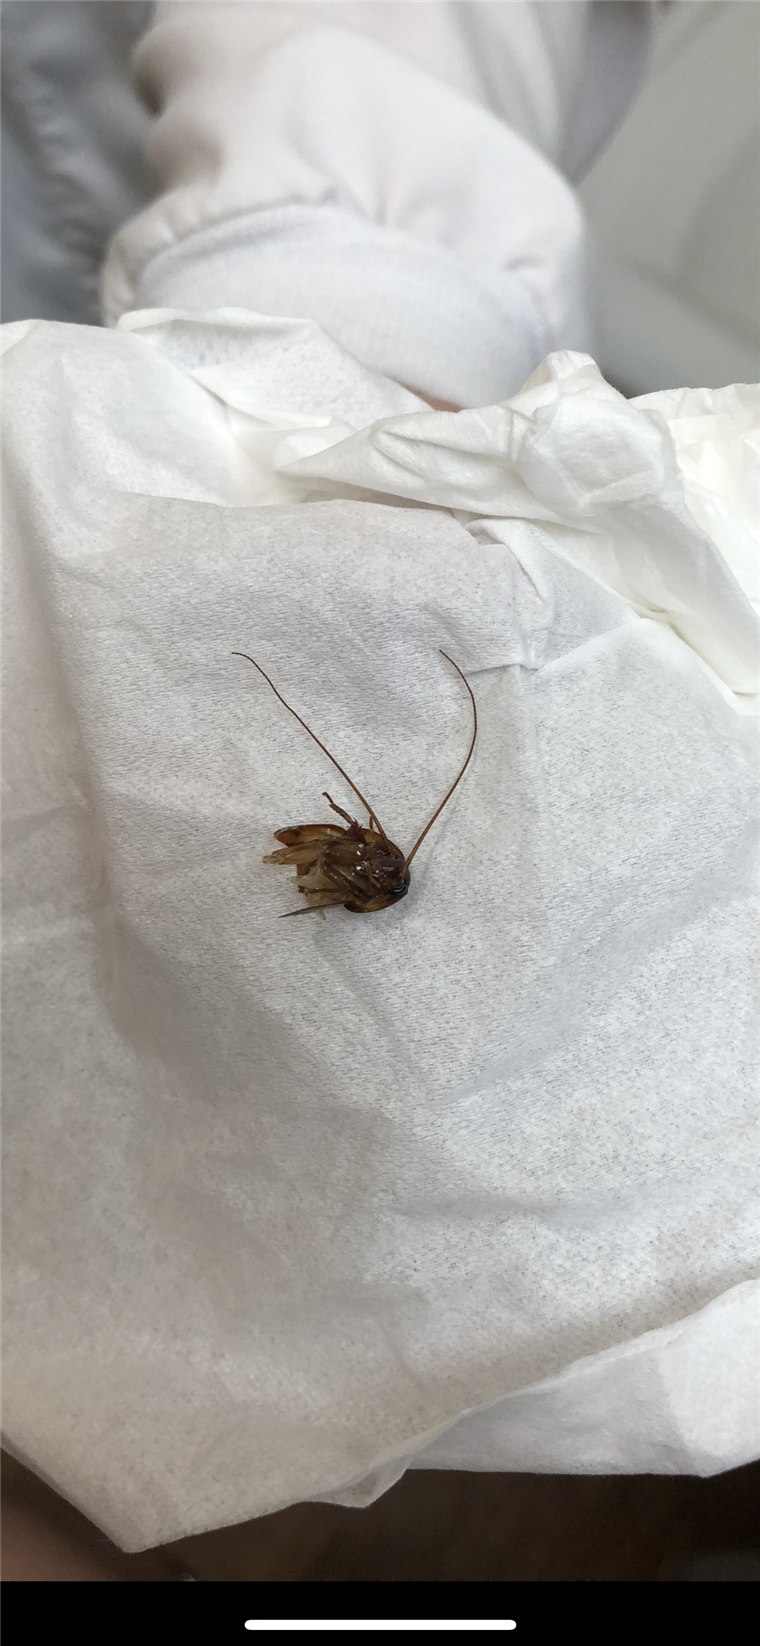 קייטי Holley woke up with a cockroach stuck in her ear